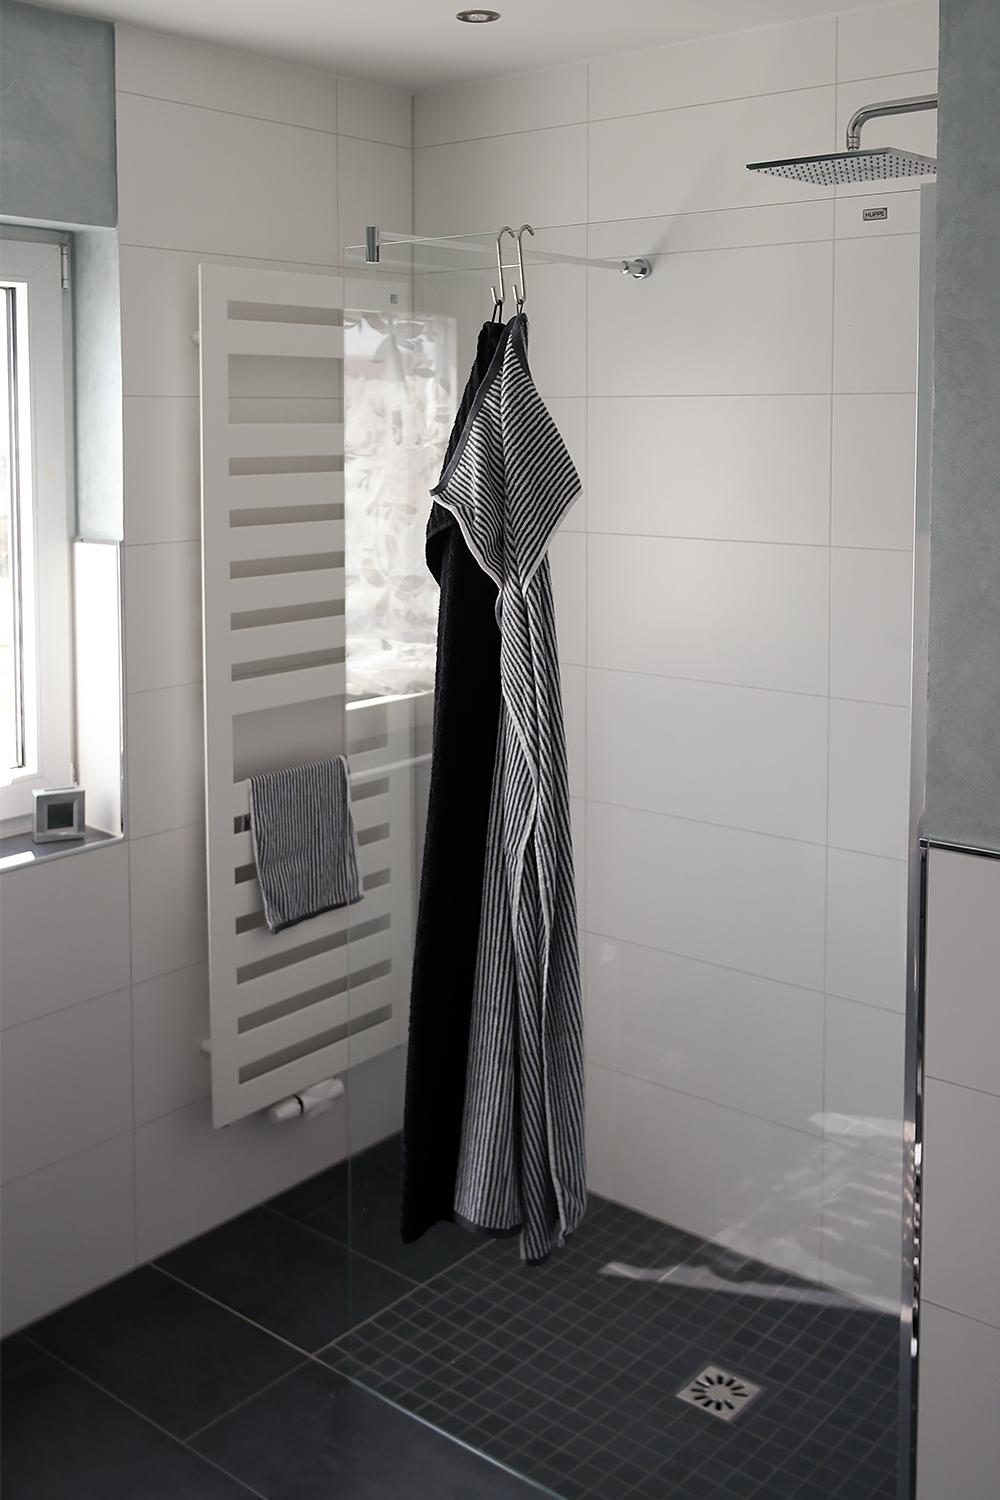 Begehbare Dusche #ebenerdigedusche ©Banovo GmbH